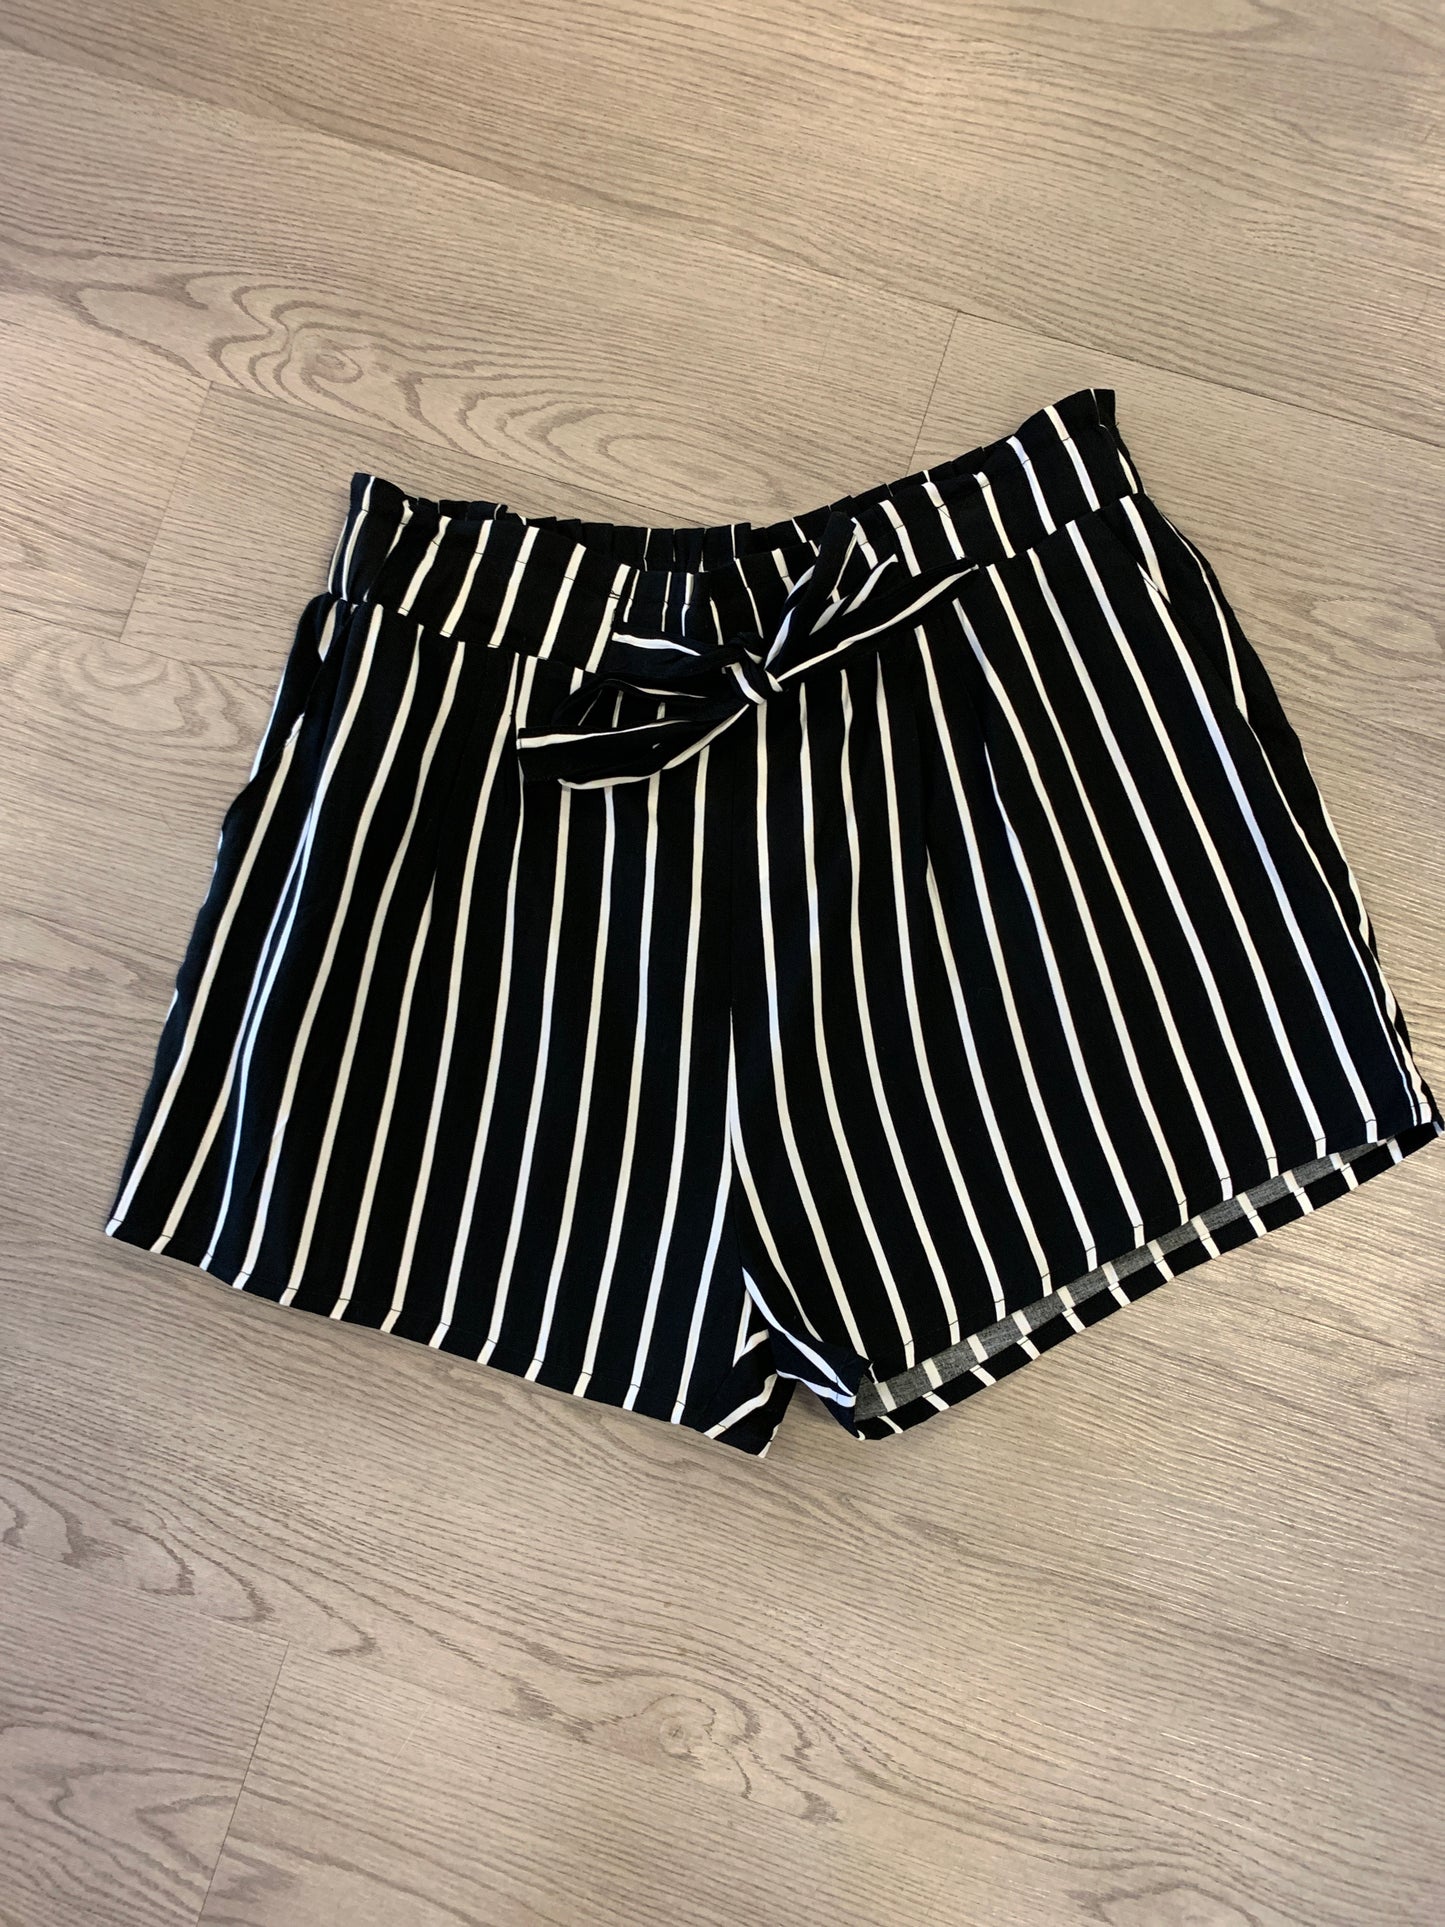 Stripe Rayon Shorts